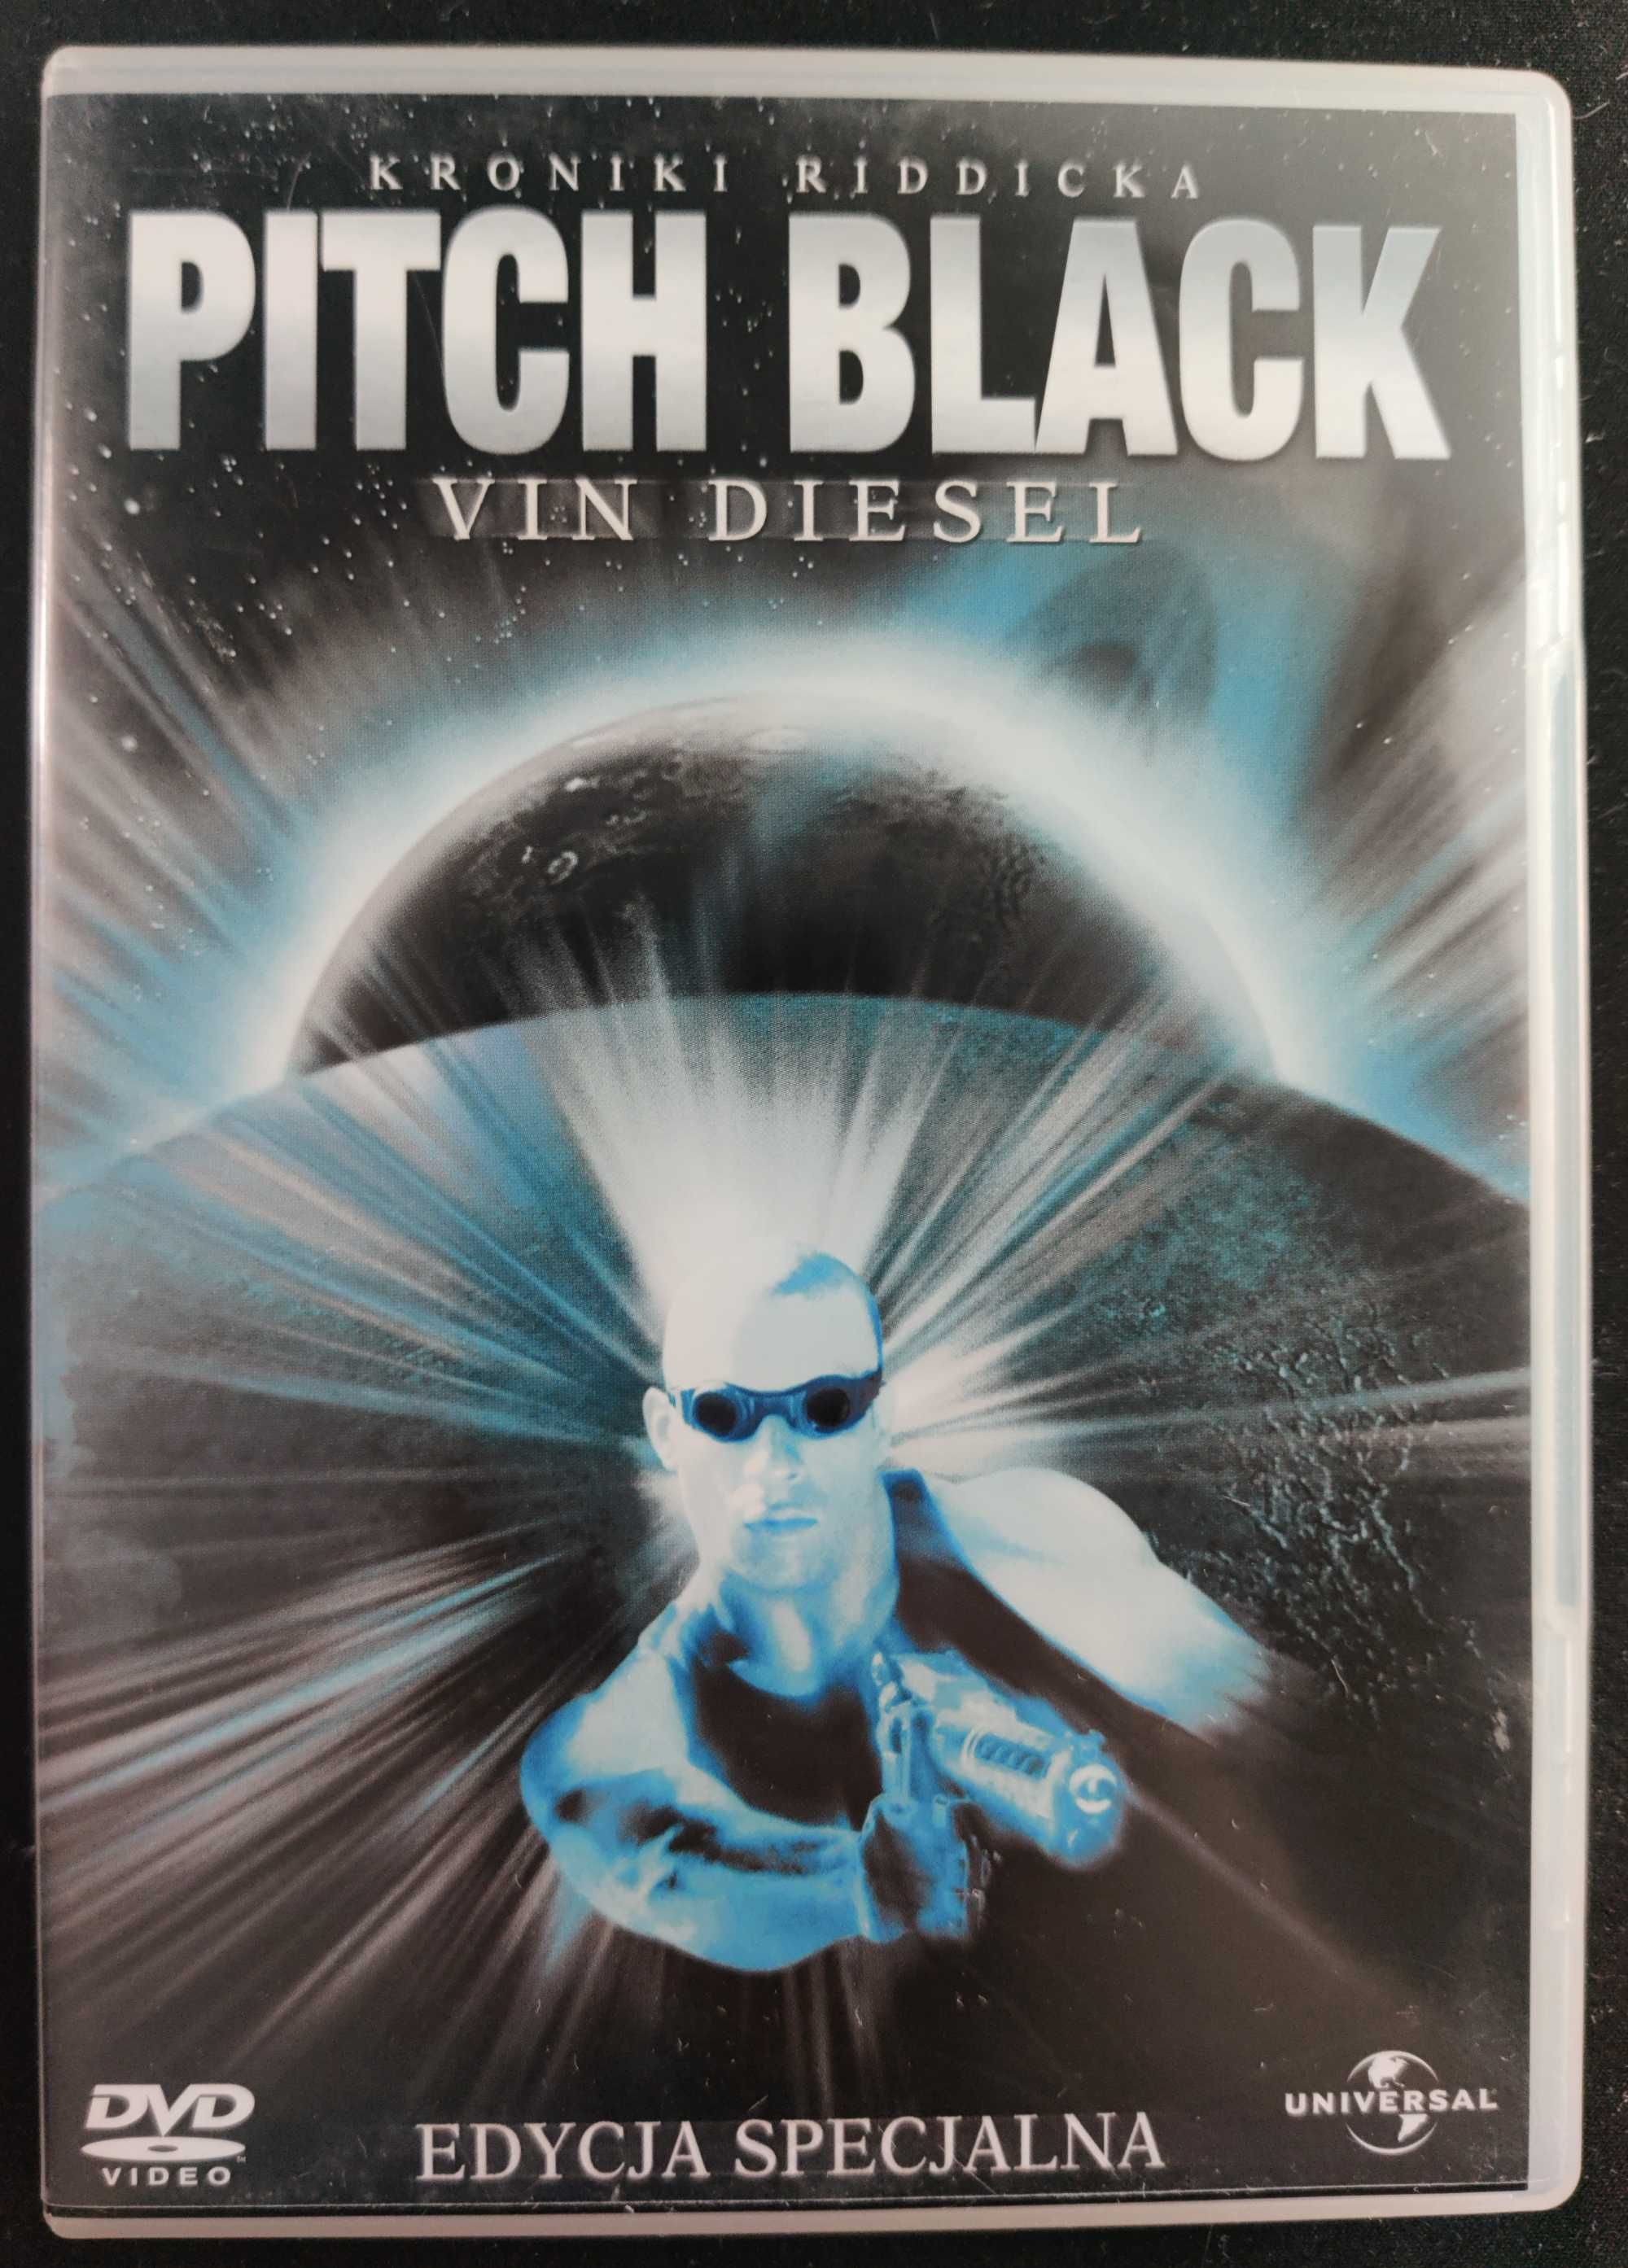 Pitch Black (Kroniki Riddicka) [DVD] - polskie napisy